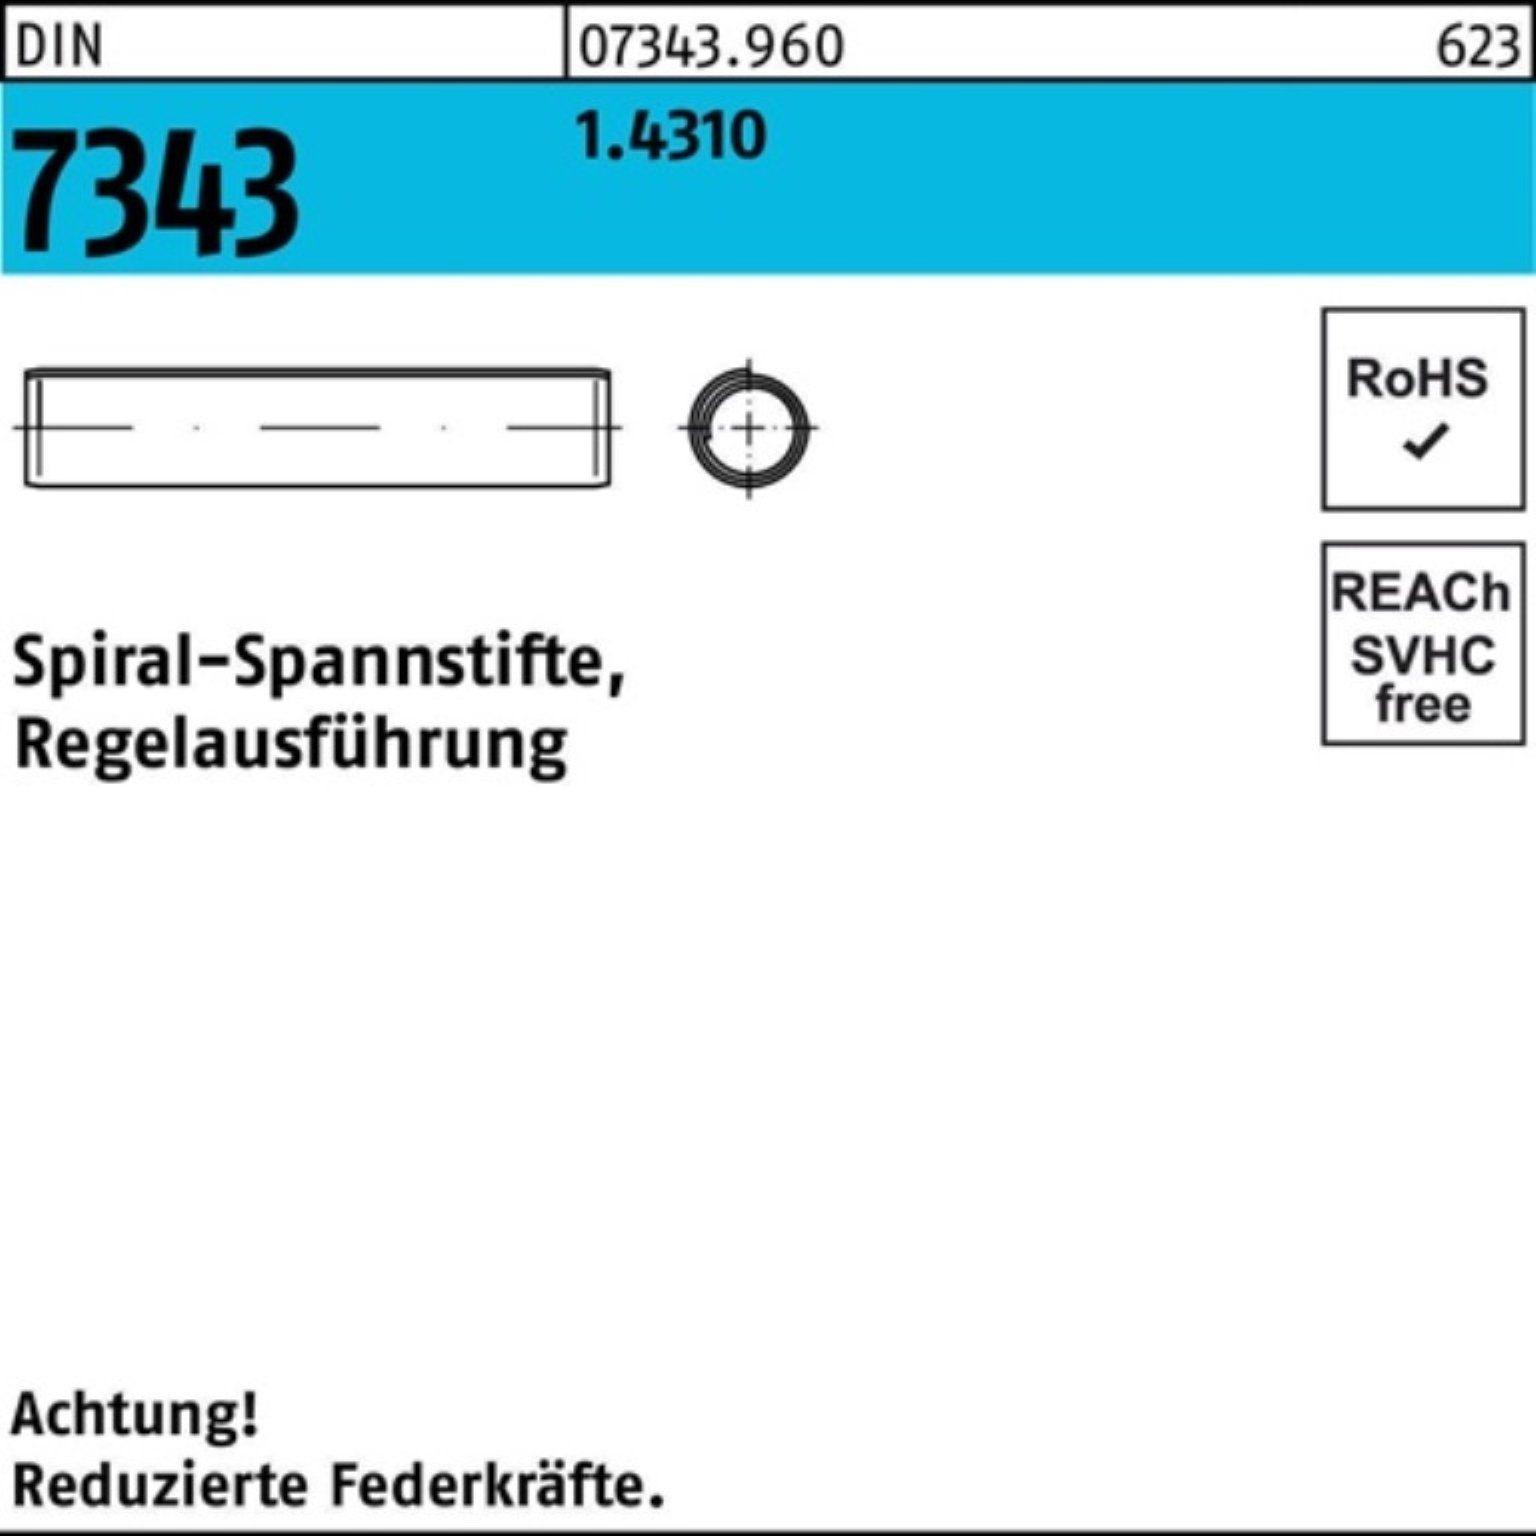 Reyher Spannstift 500er Pack DIN 26 6x Regelausf. 7343/ISO 8750 1.4310 Spiralspannstift